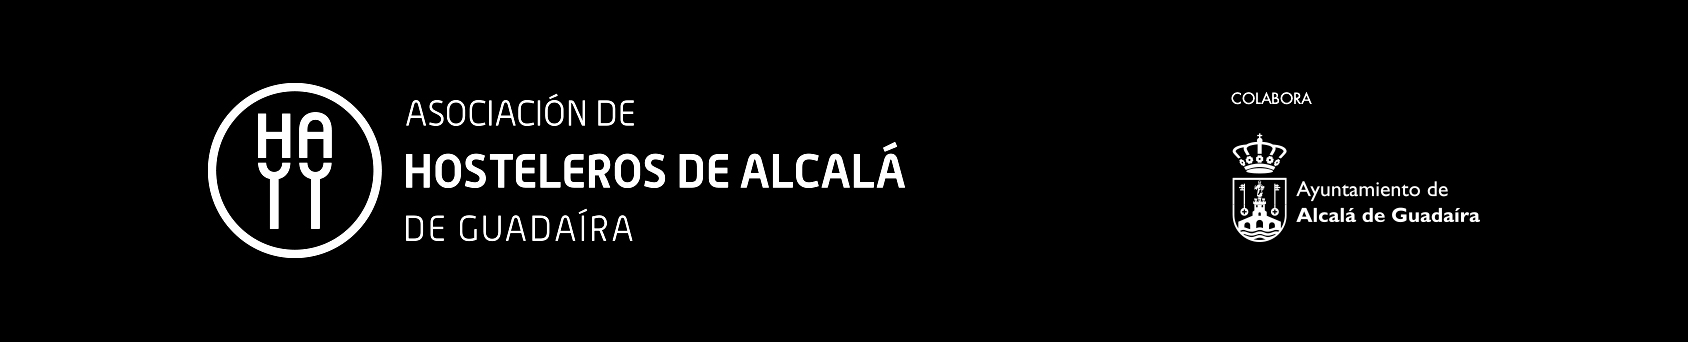 Asociación de hosteleros de Alcalá de Guadaíra